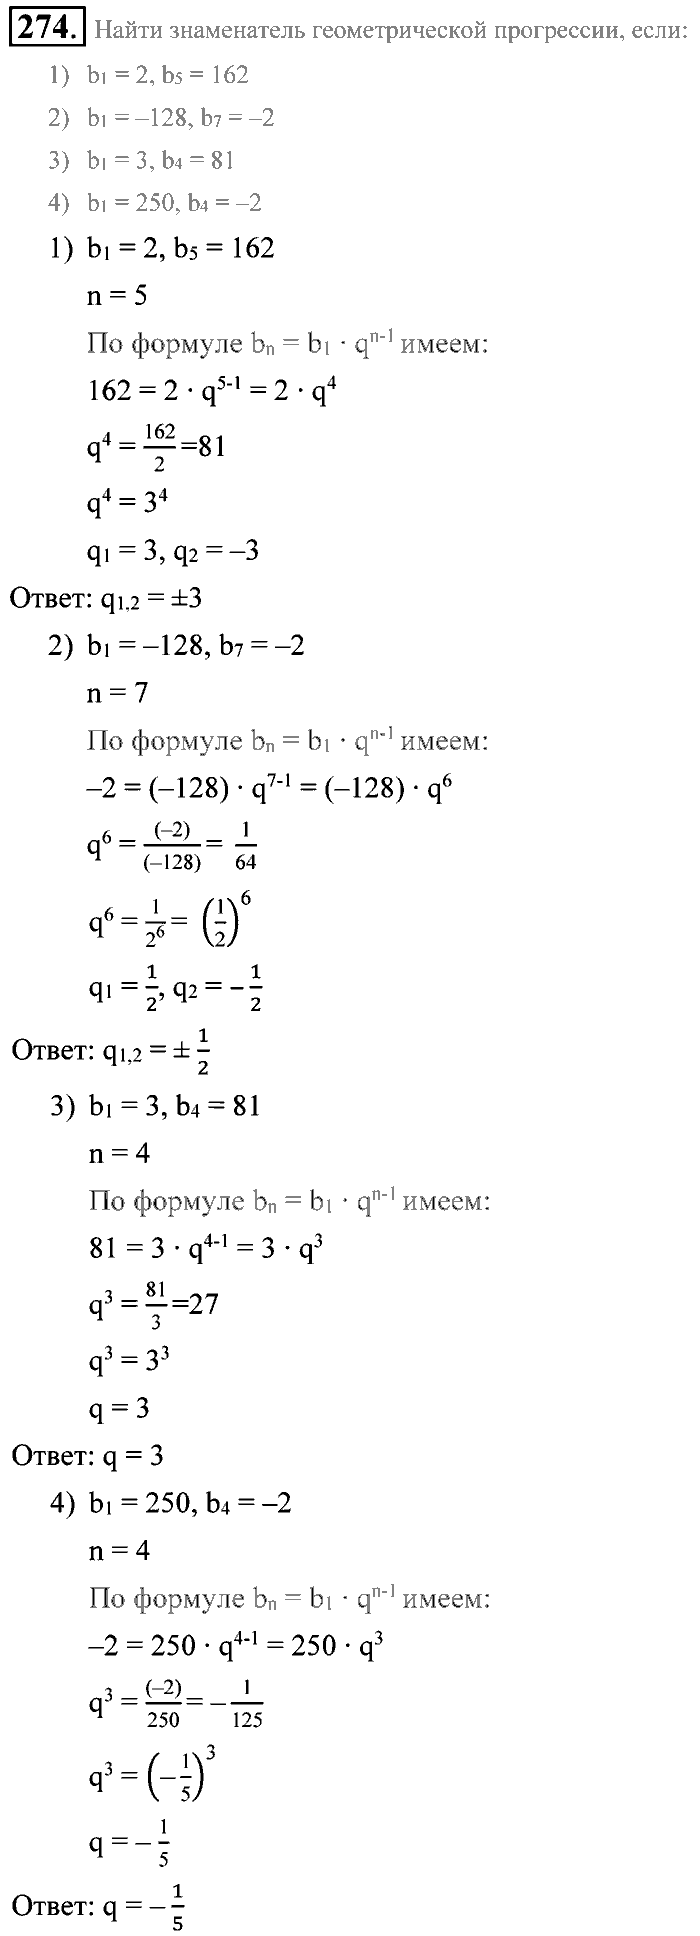 Алгебра, 9 класс, Алимов, Колягин, 2001, Проверь себя Задание: 274